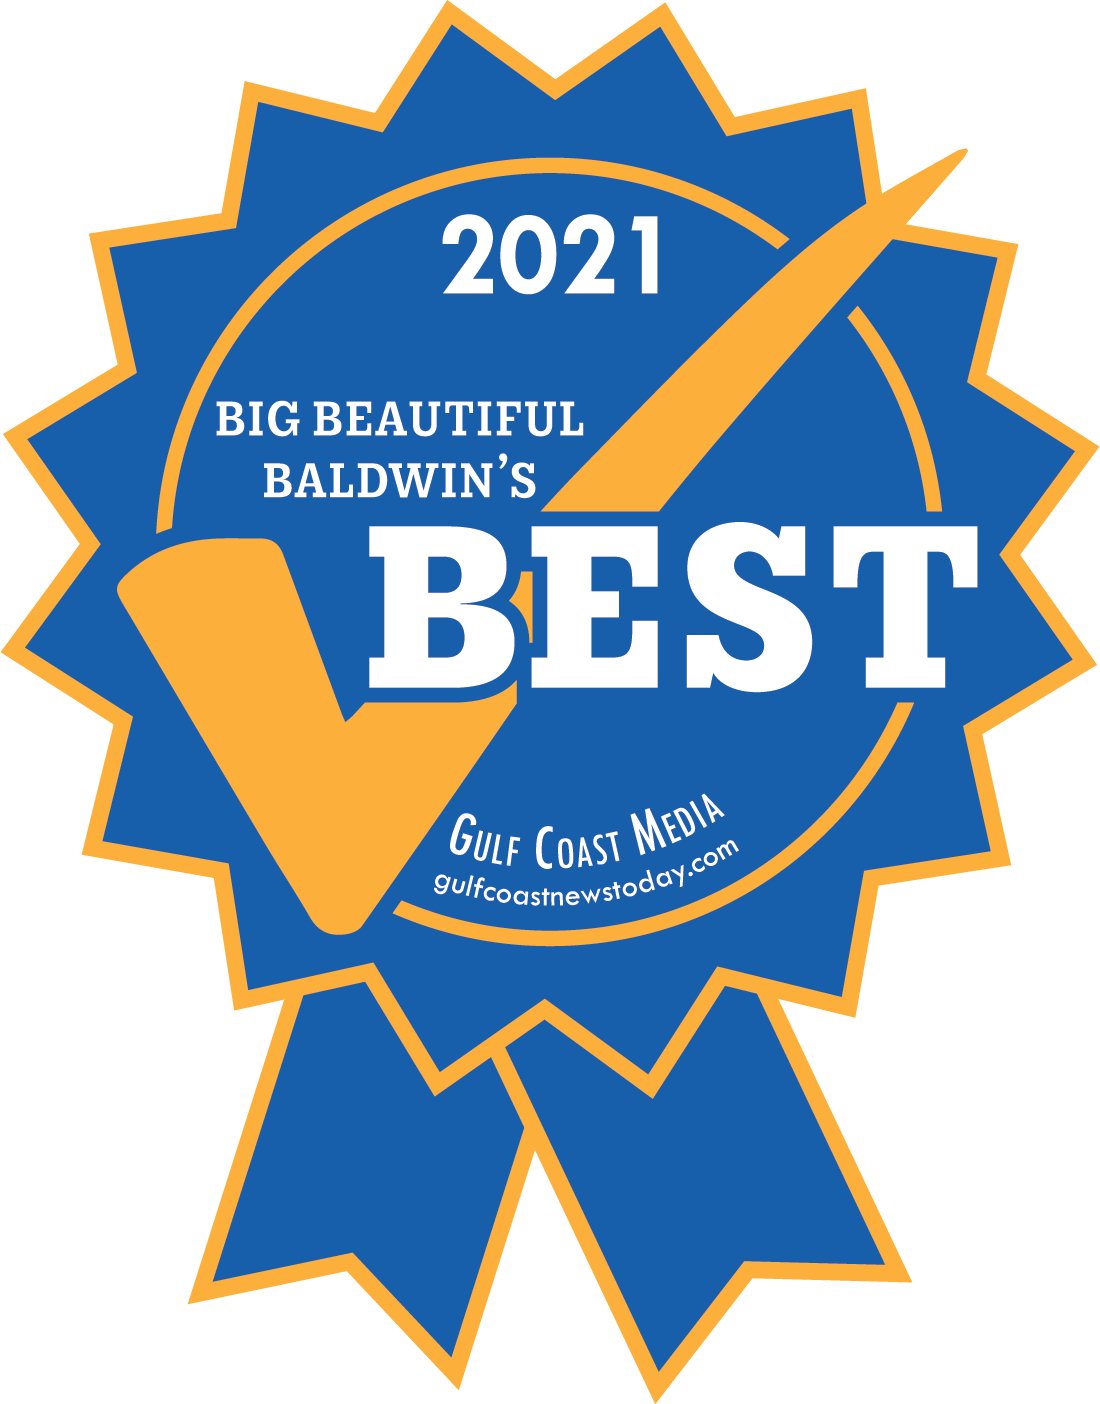 BIG BEAUTIFUL BALDWIN'S BEST OF 2021!